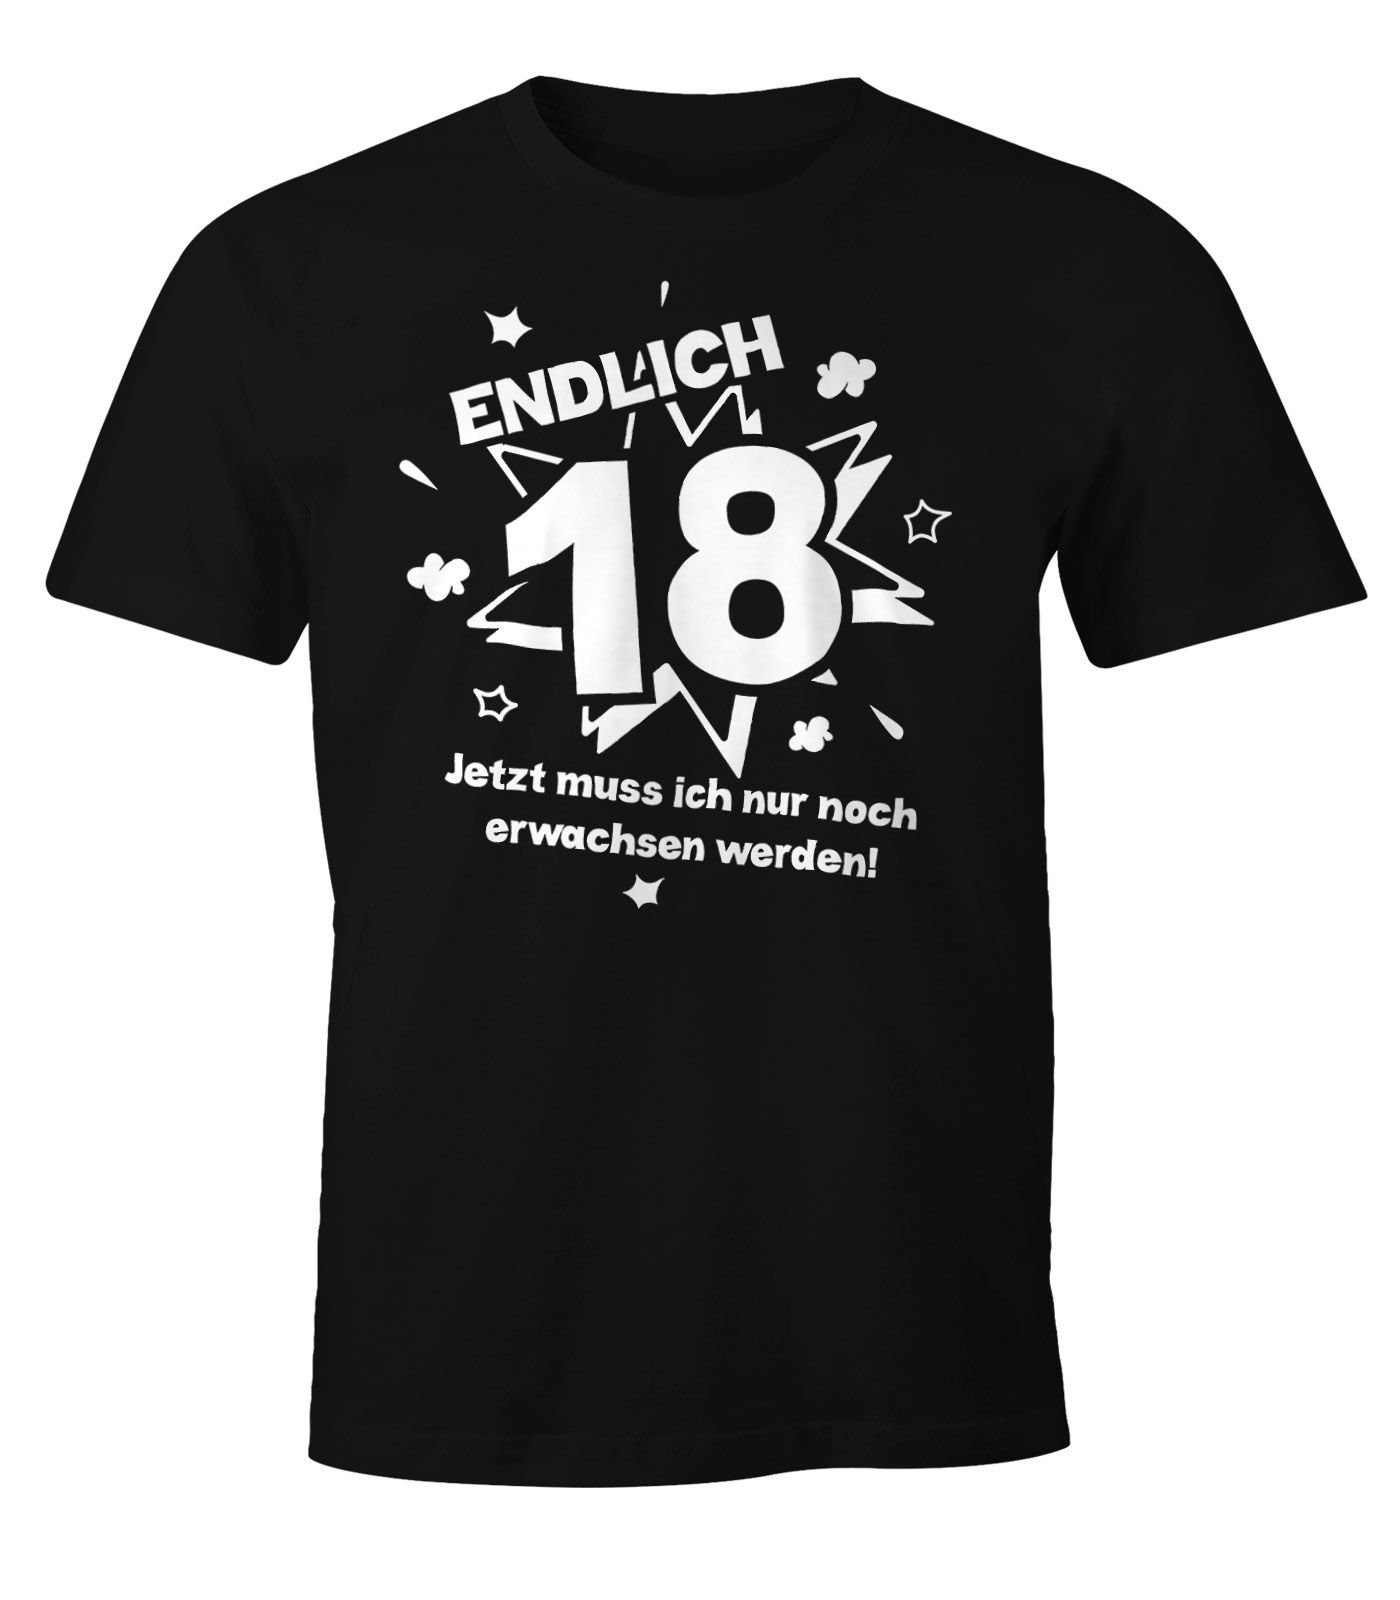 MoonWorks Print-Shirt Herren T-Shirt Endlich 18 jetzt muß ich nur noch erwachsen werden zum 18. Geburtstag Geschenk Moonworks® mit Print schwarz